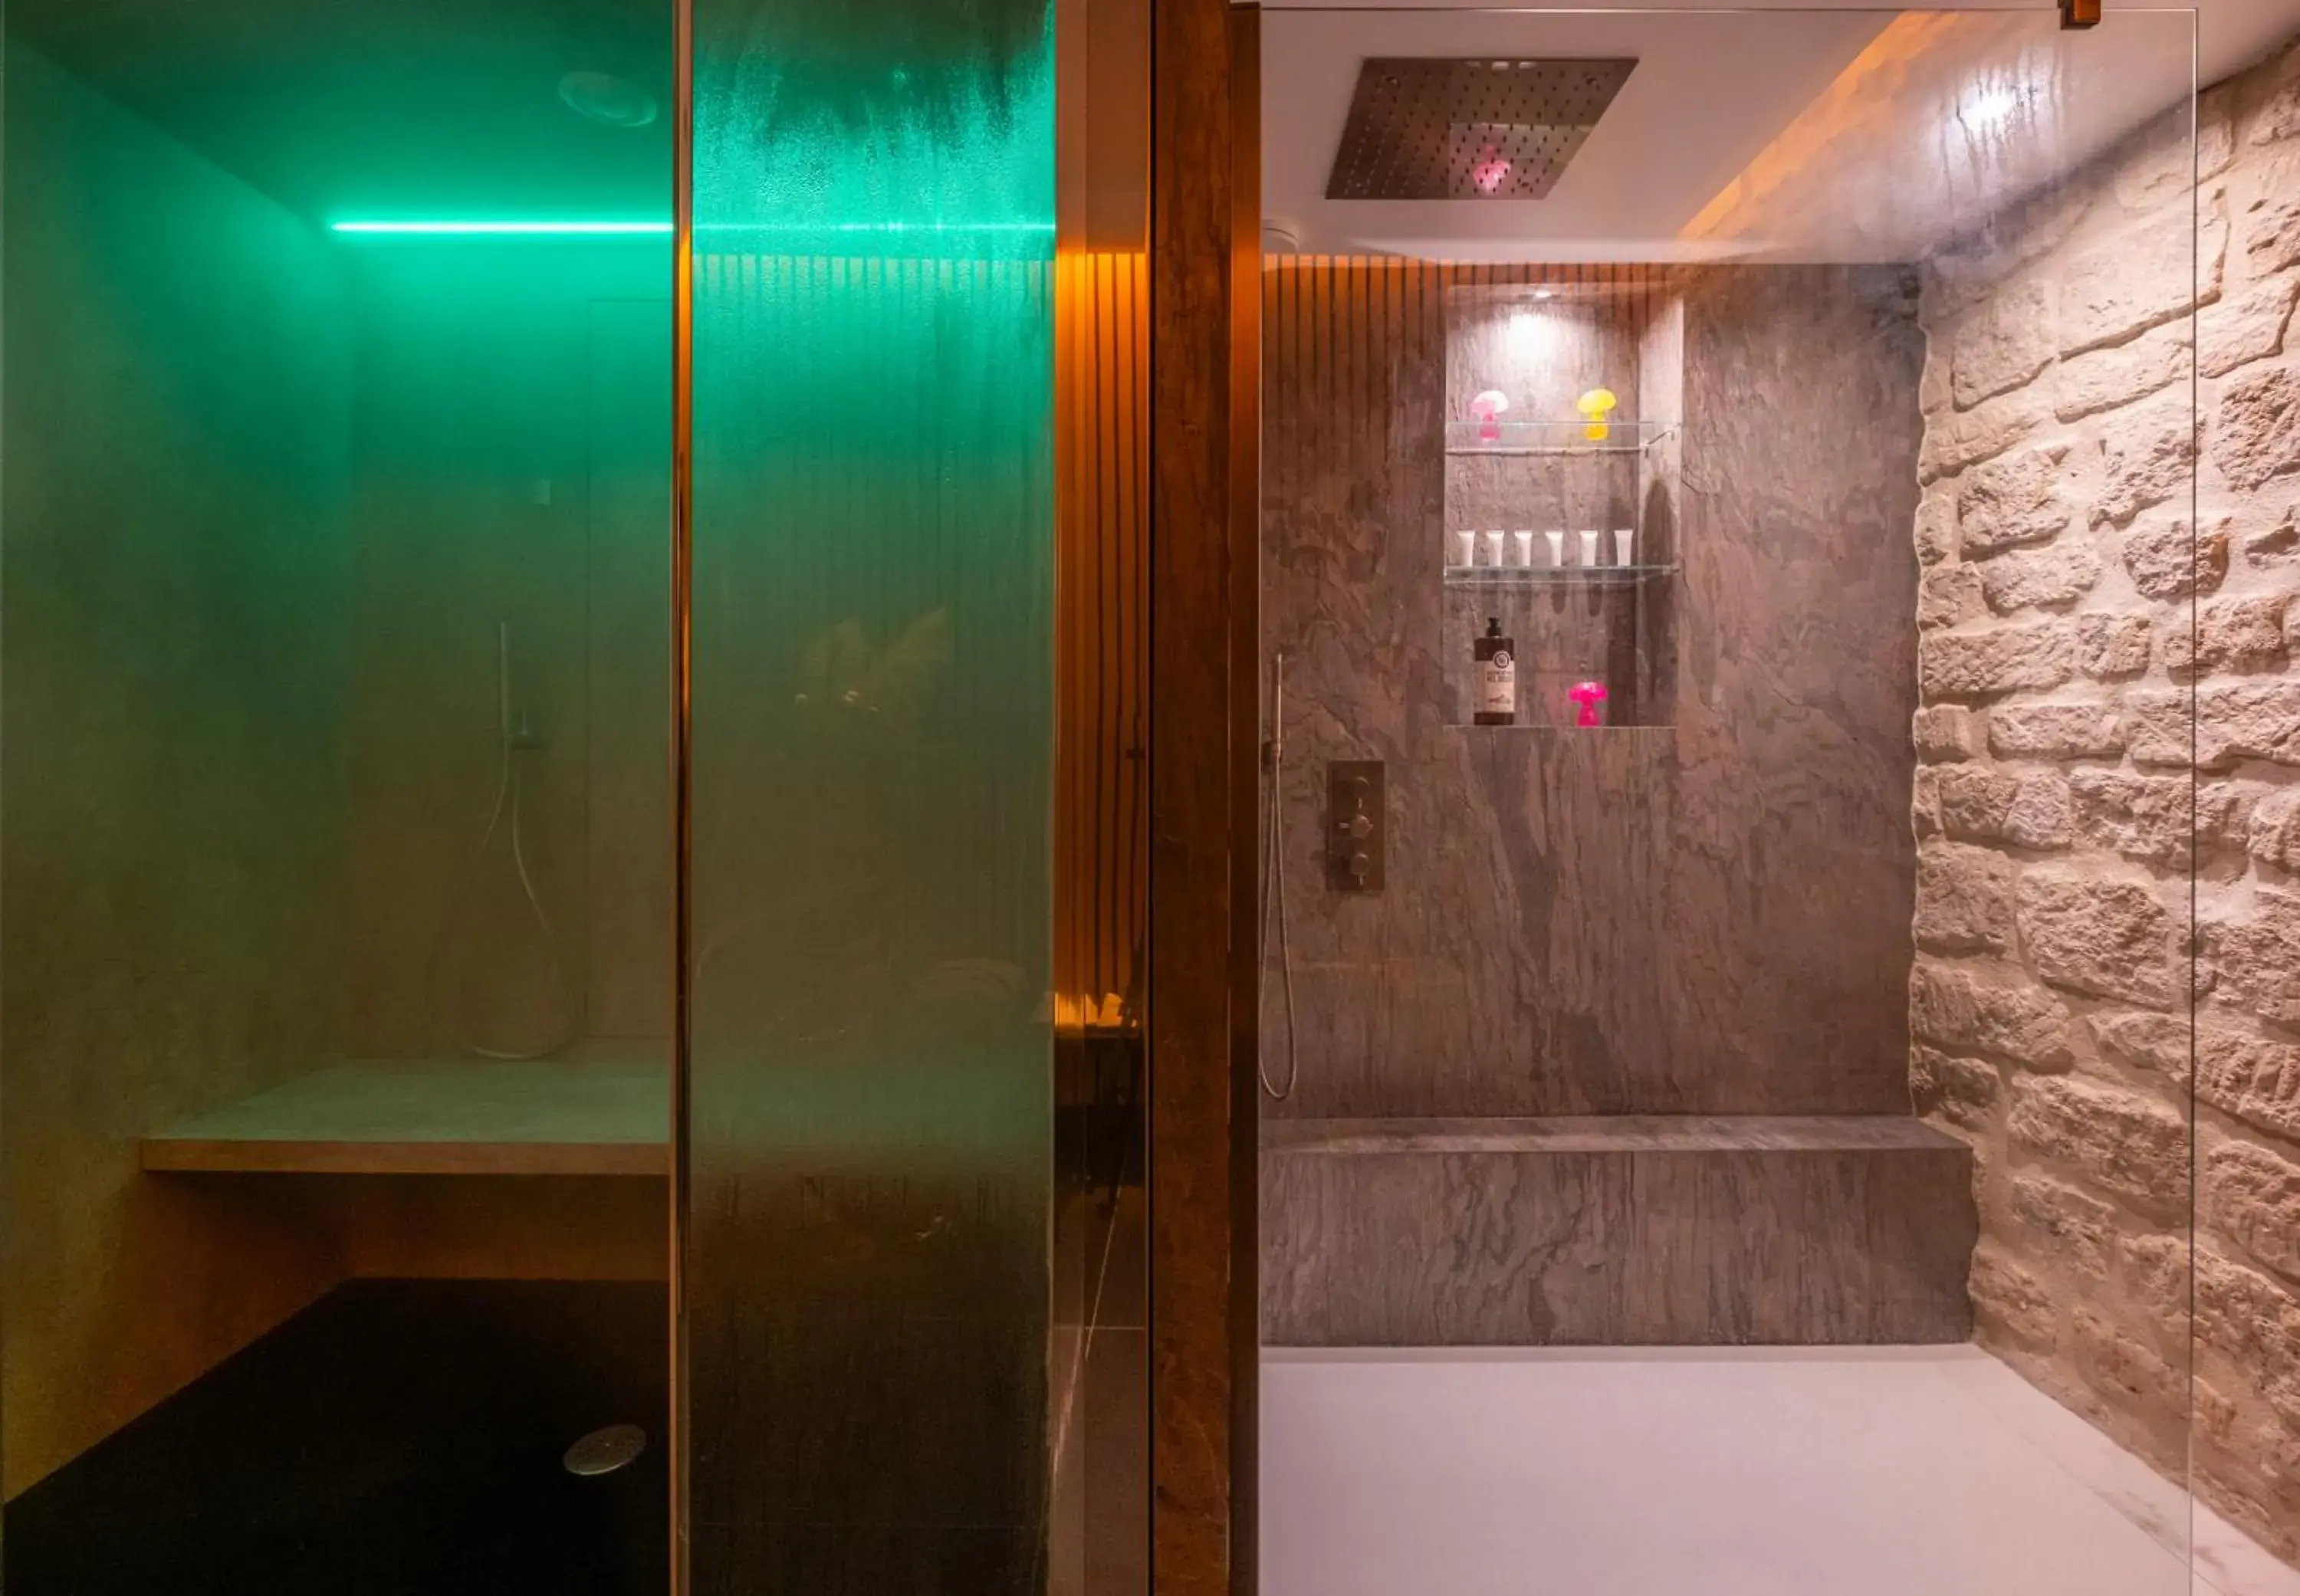 Steam room, Bathroom in Hotel Veryste